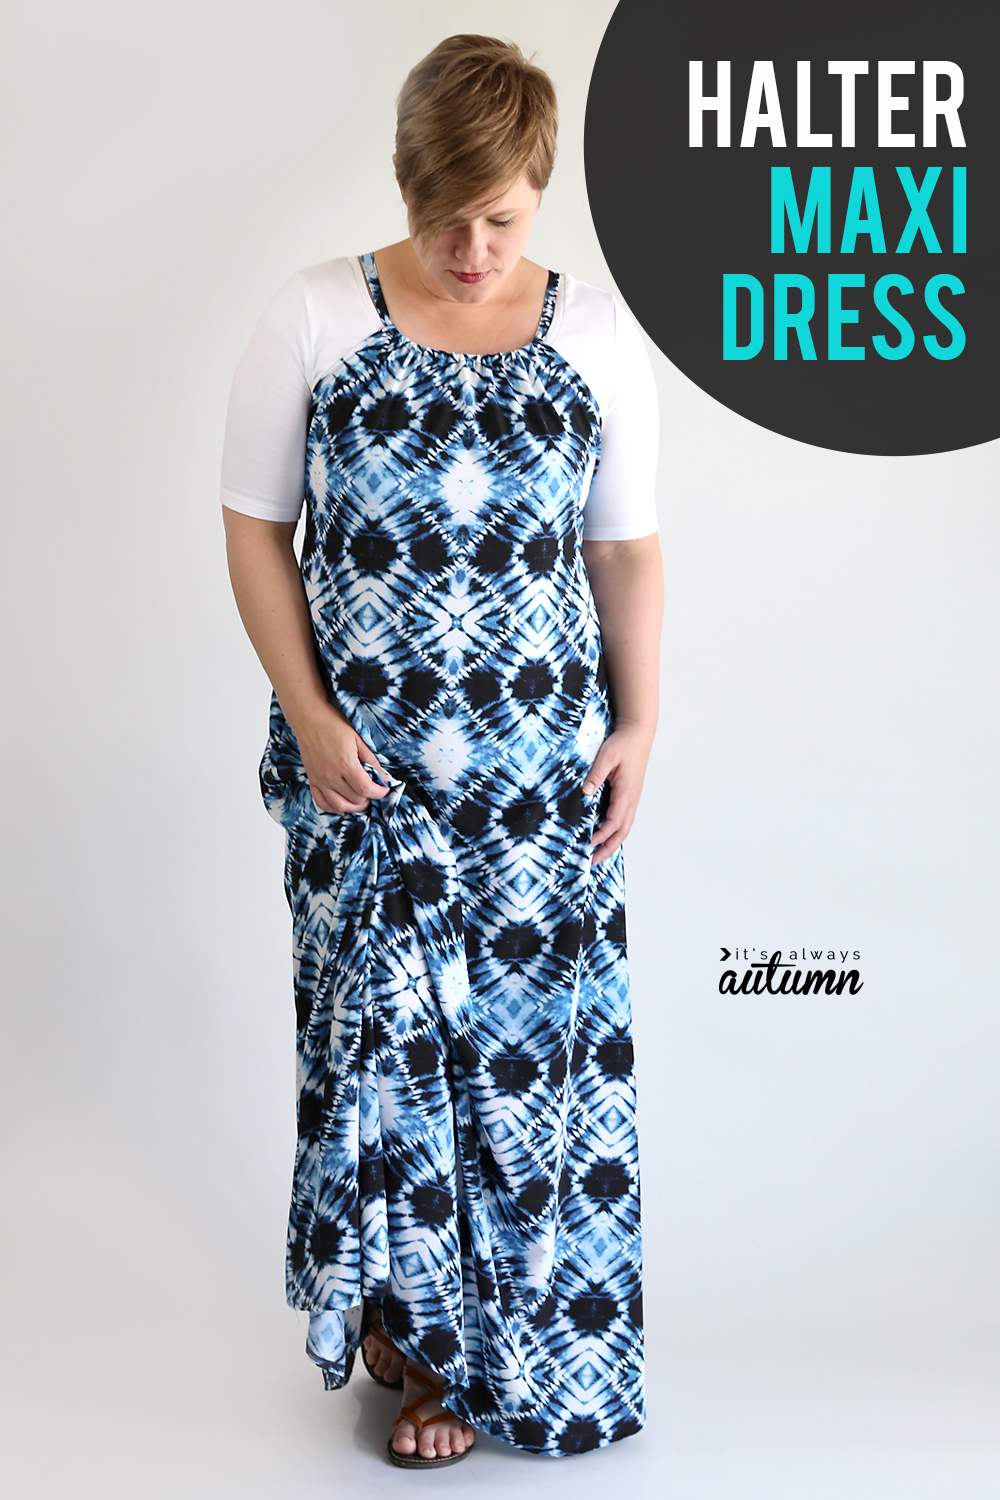 https://www.itsalwaysautumn.com/wp-content/uploads/2018/05/diy-halter-maxi-dress-how-to-sew-maxi-dress-1.jpg